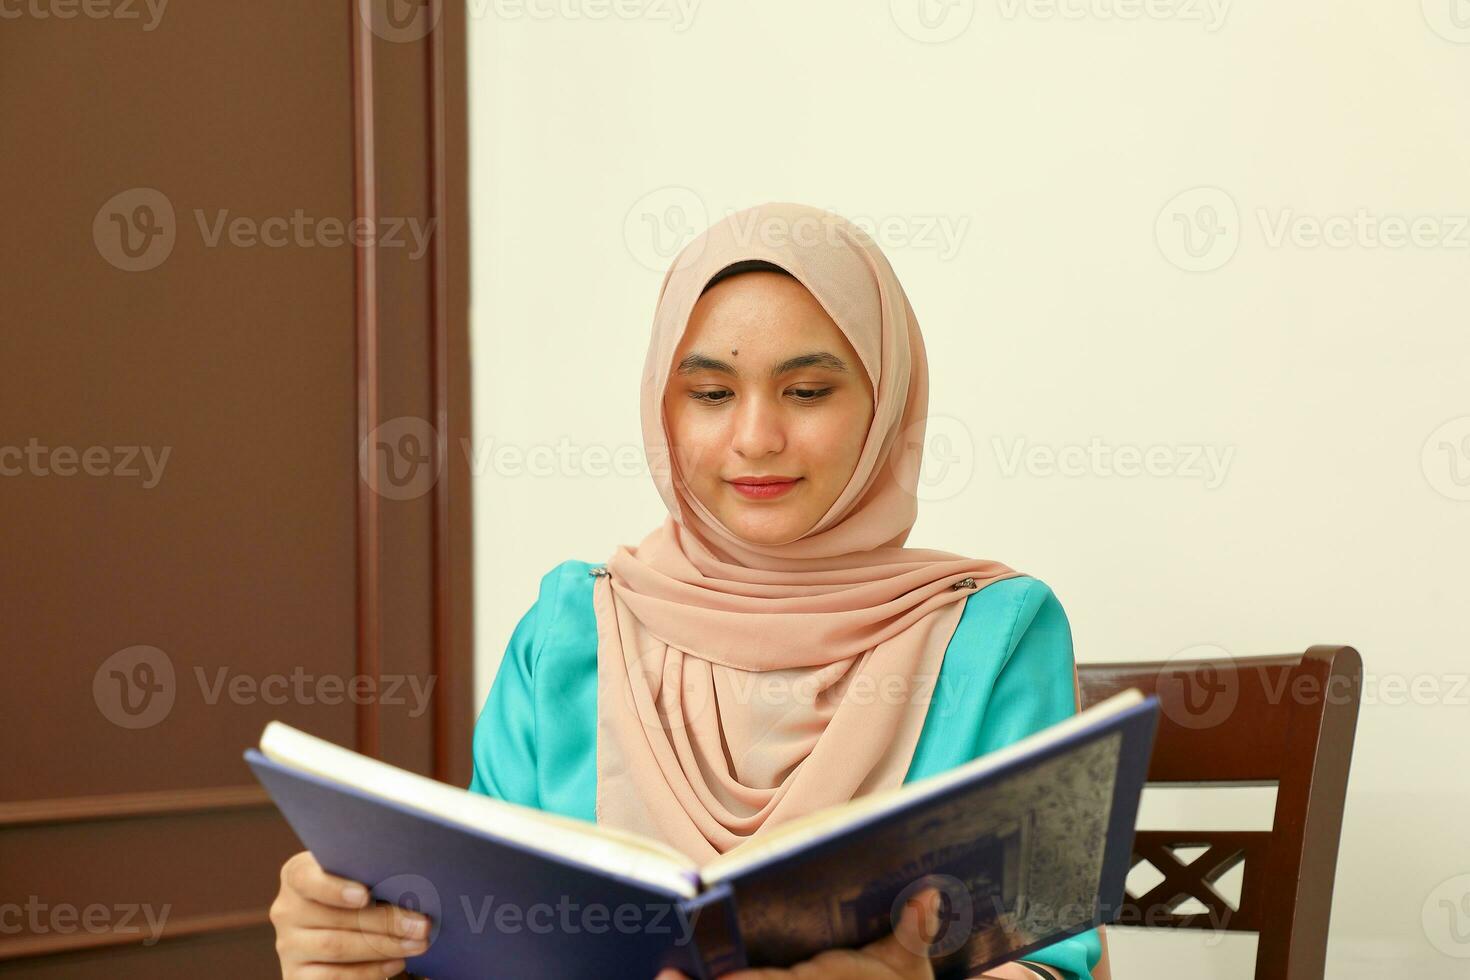 jong Aziatisch Maleis moslim vrouw vervelend hoofddoek Bij huis kantoor leerling zittend Bij tafel lezen boek document Notitie studie glimlach gelukkig kijken foto